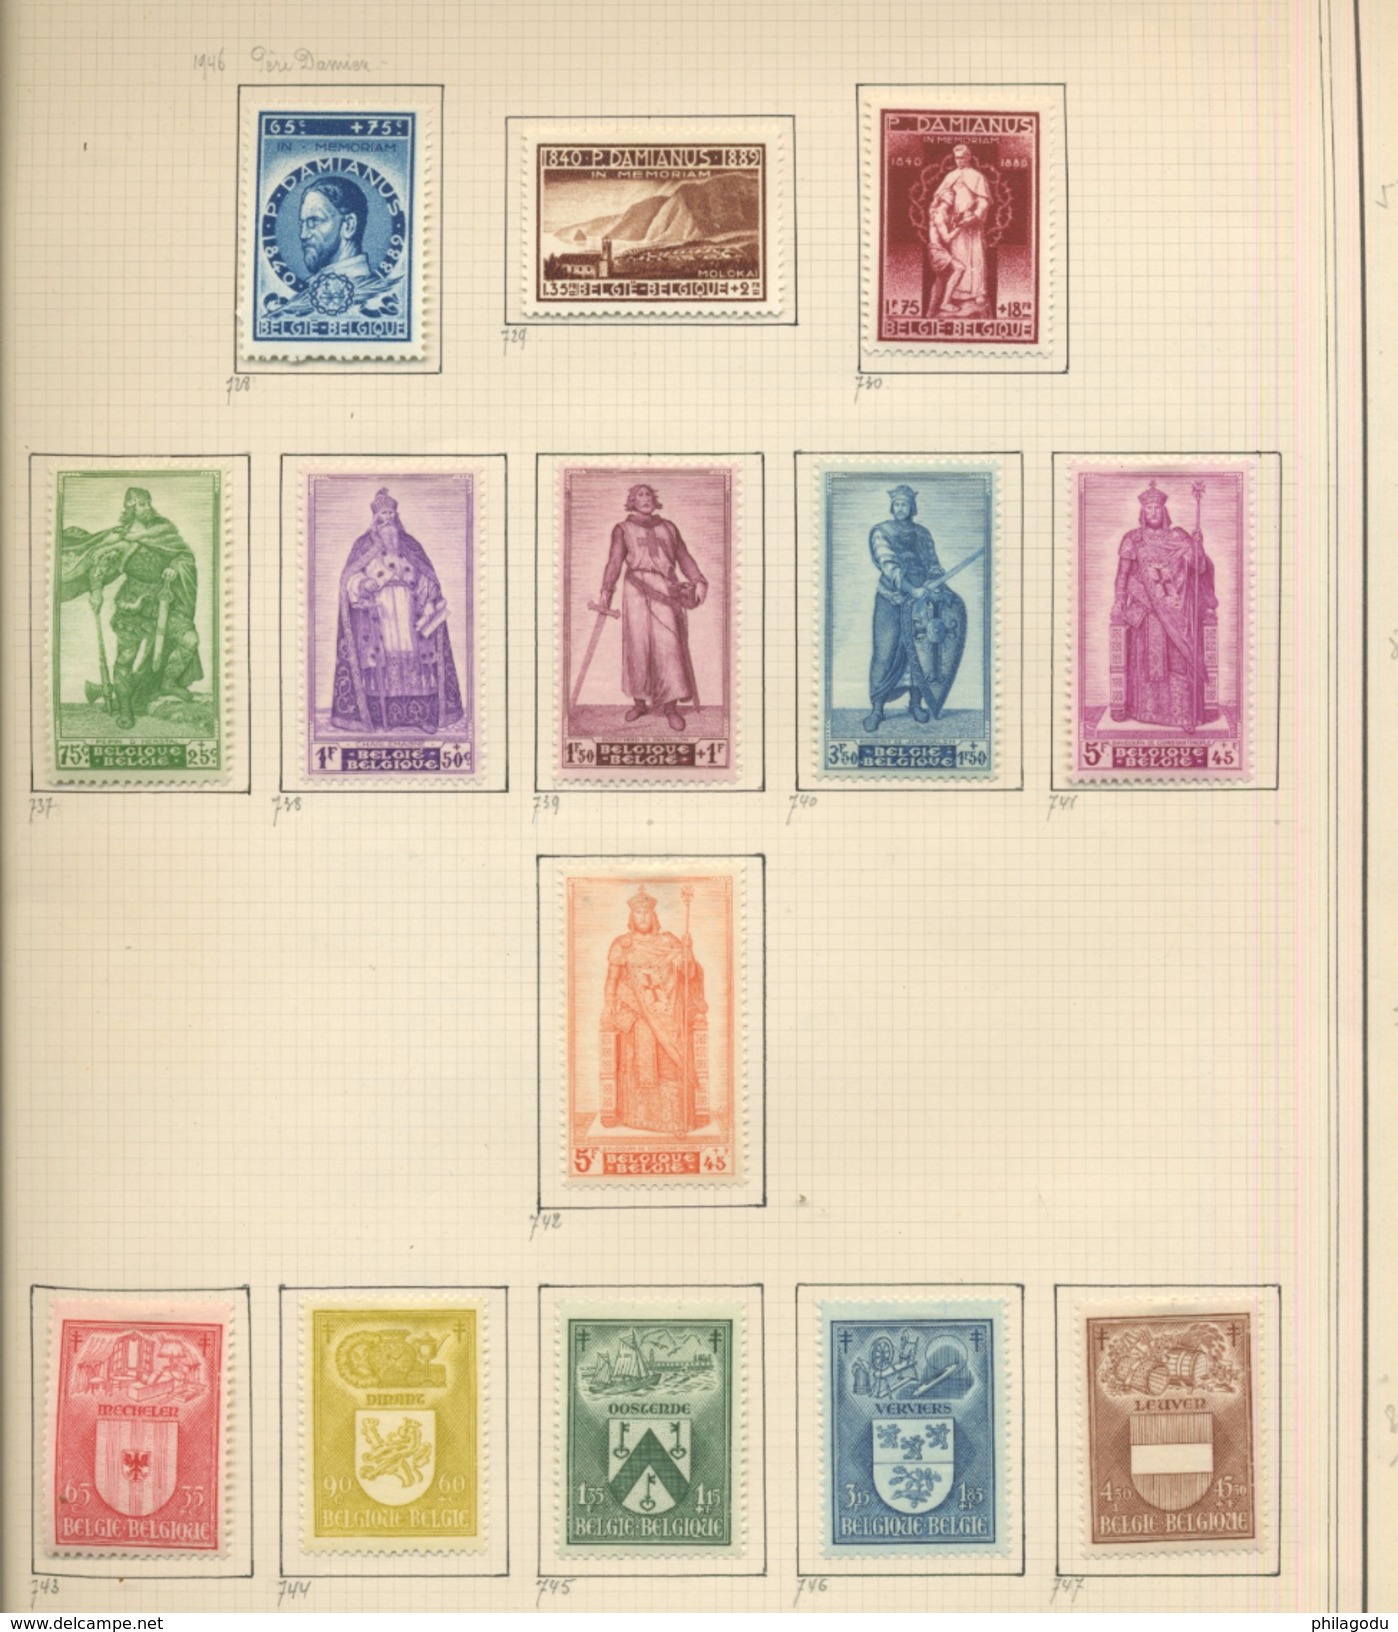 collection BELGIQUE 1920 à 1953  neufs avec charnière  cote + 700 euros